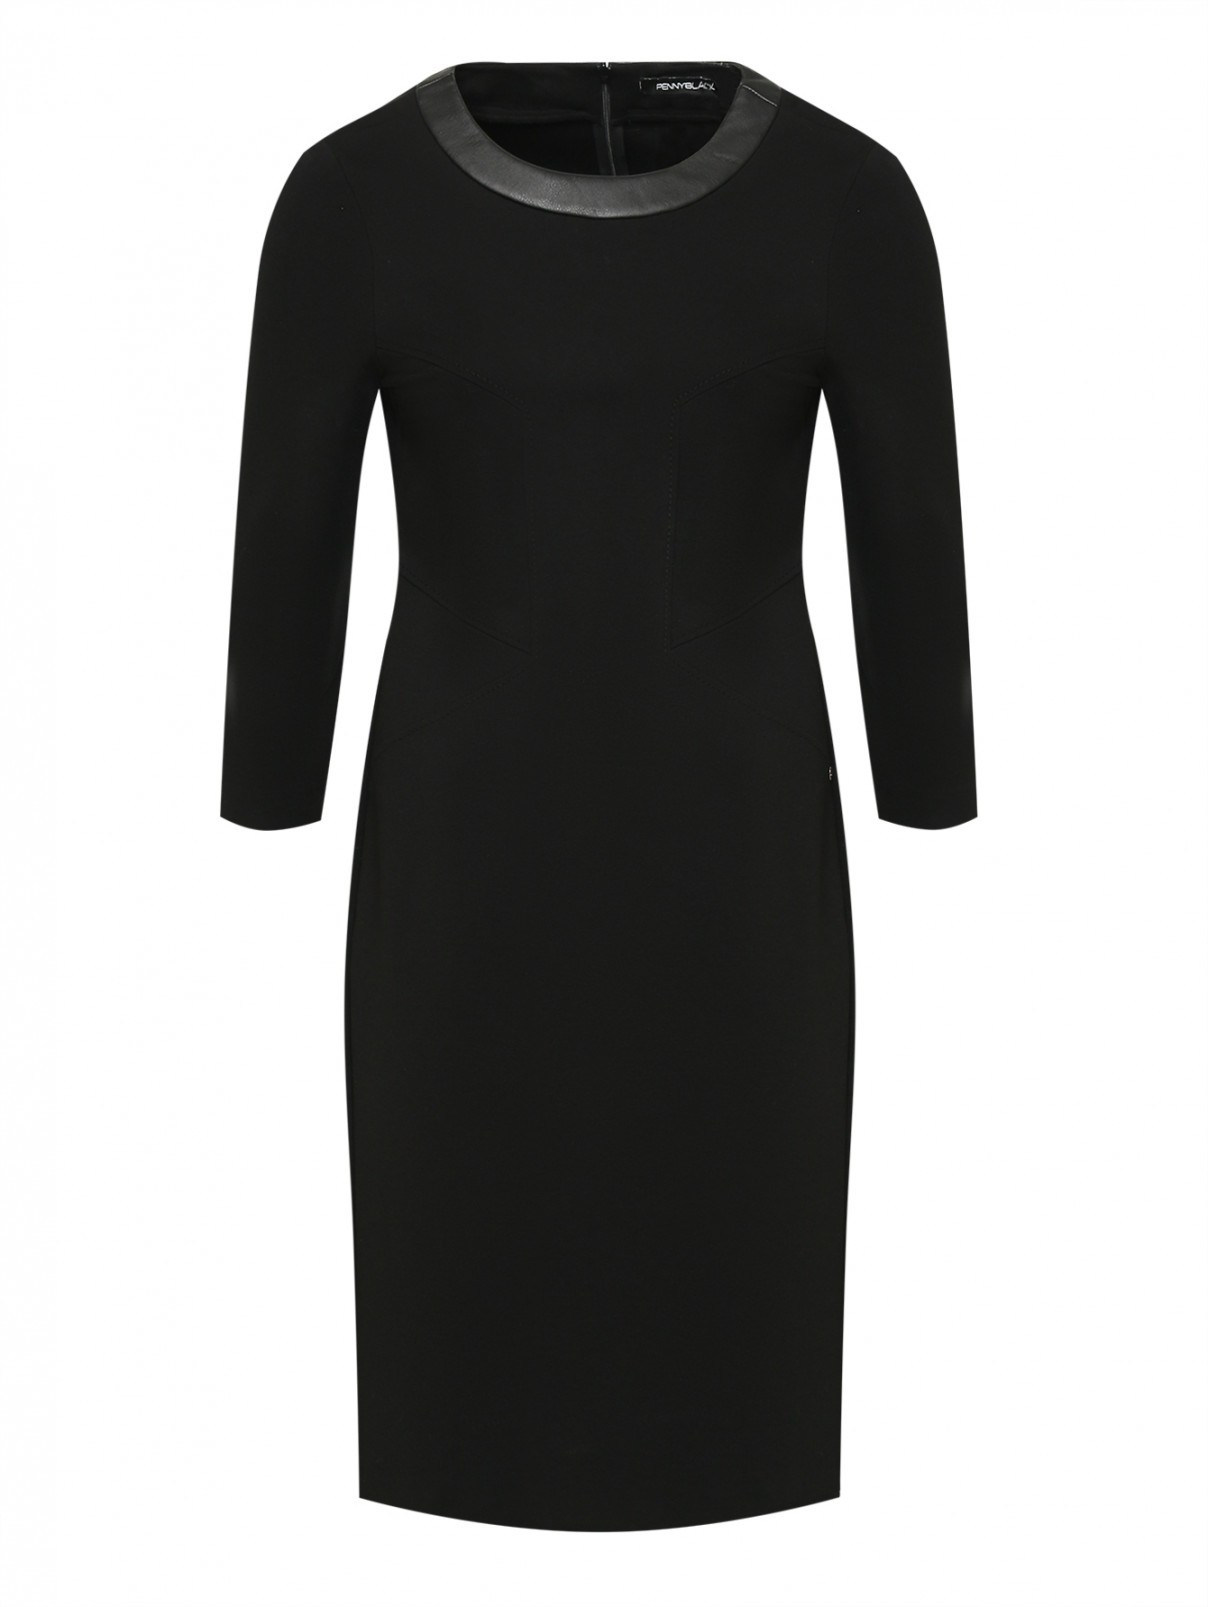 Платье с рельефными швами Penny Black  –  Общий вид  – Цвет:  Черный